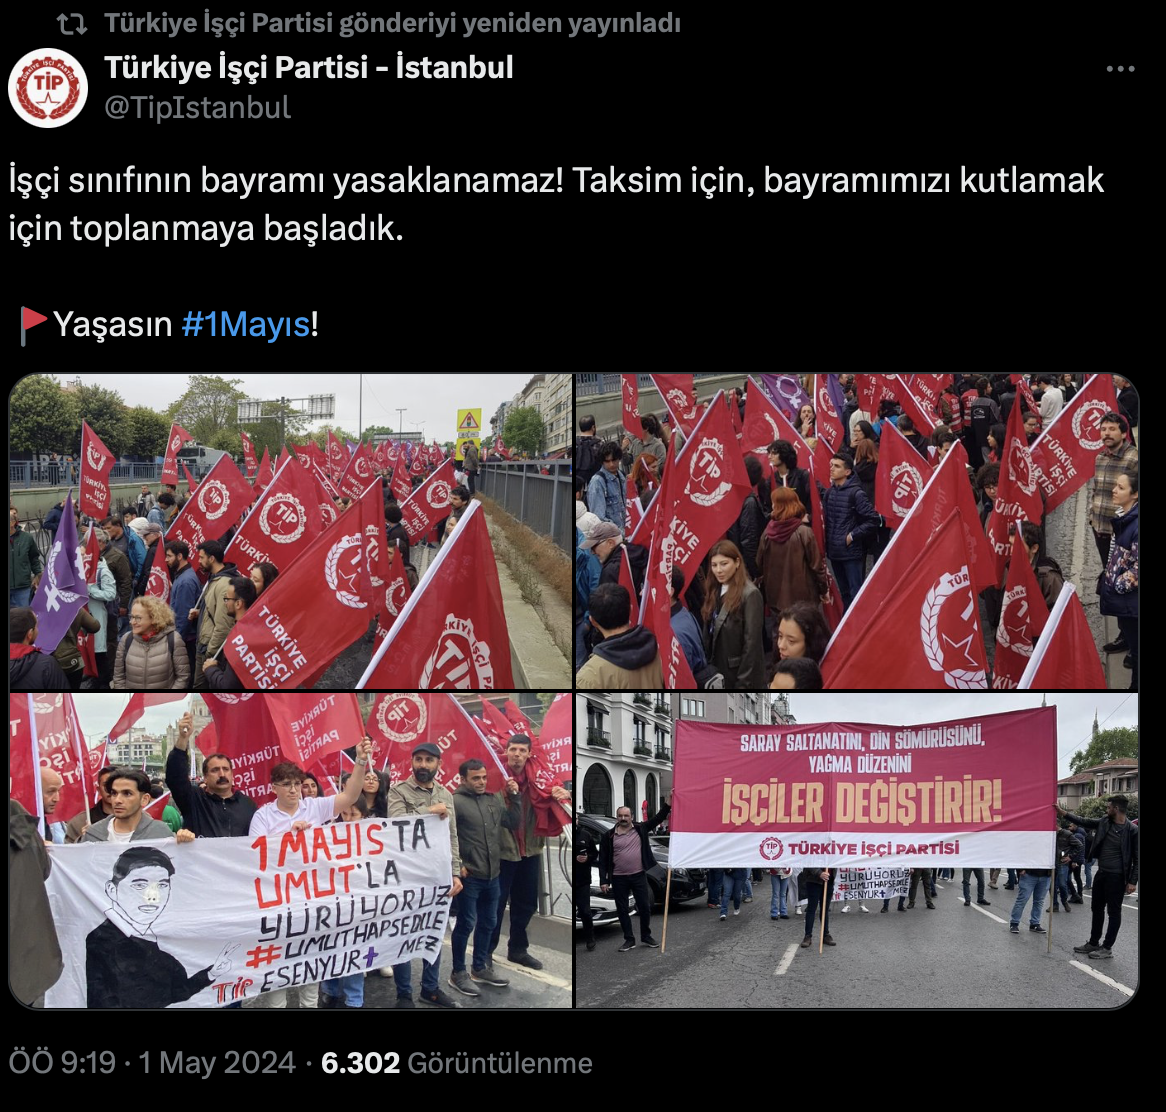 TİP: İşçi sınıfının bayramı yasaklanamaz! Taksim için, bayramımızı kutlamak için toplanmaya başladık.